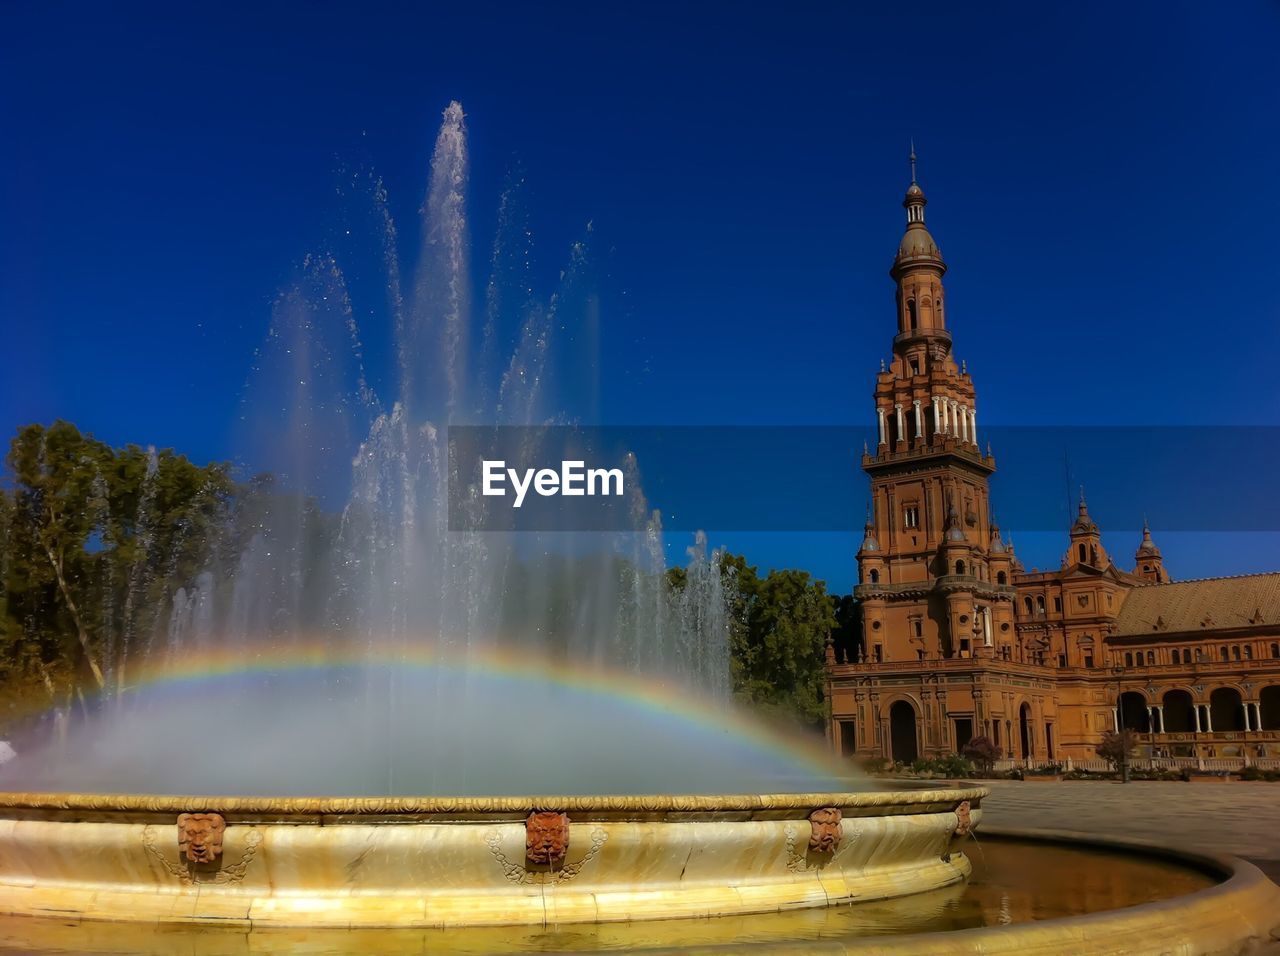 Rainbow on fountain at plaza de espana against clear blue sky